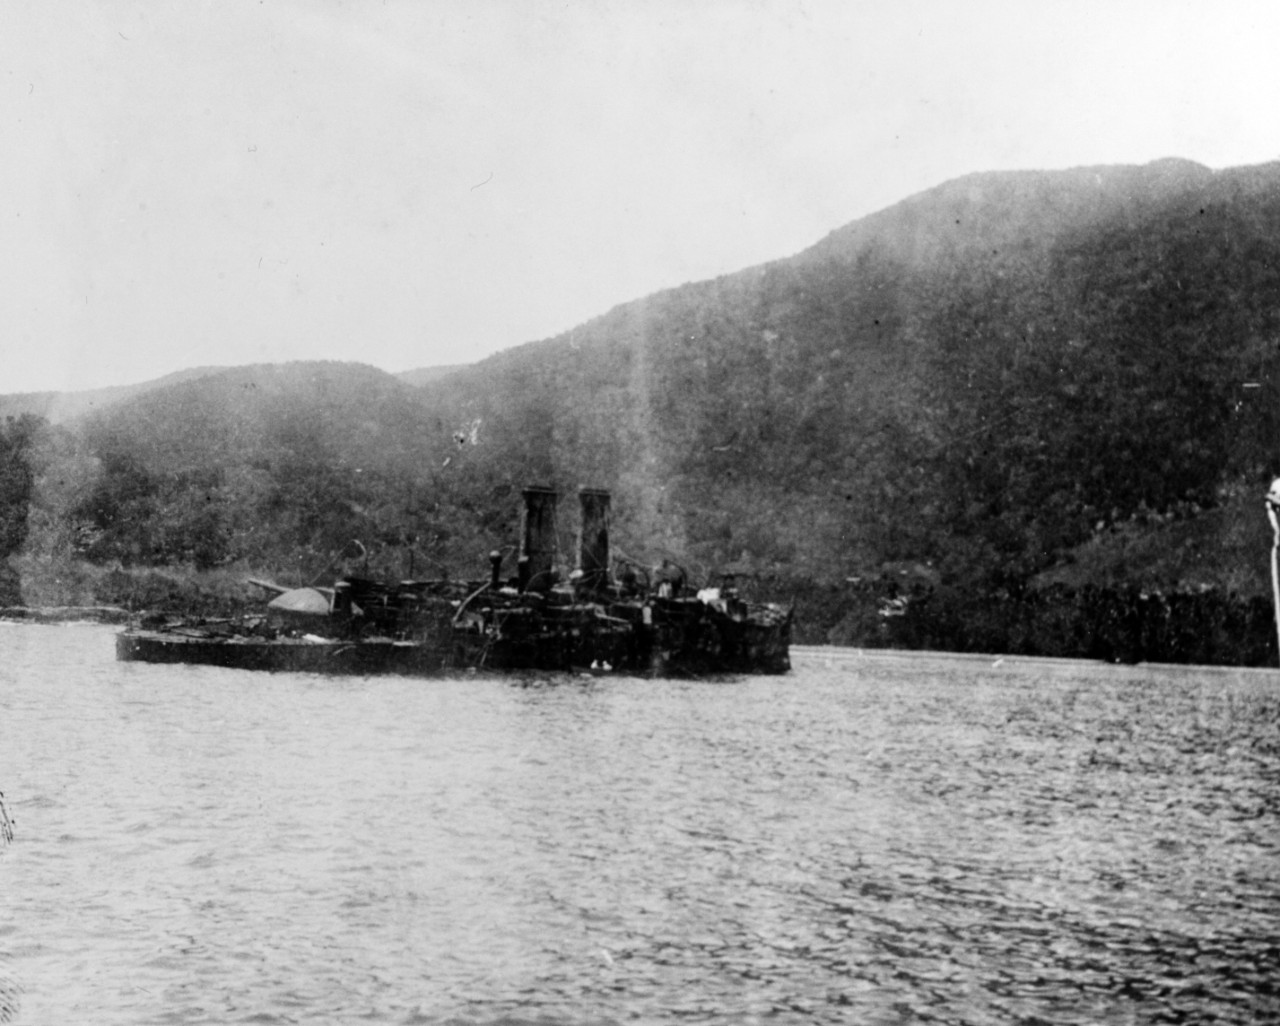 ALMIRANTE OQUENDO (Spanish cruiser, 1891)